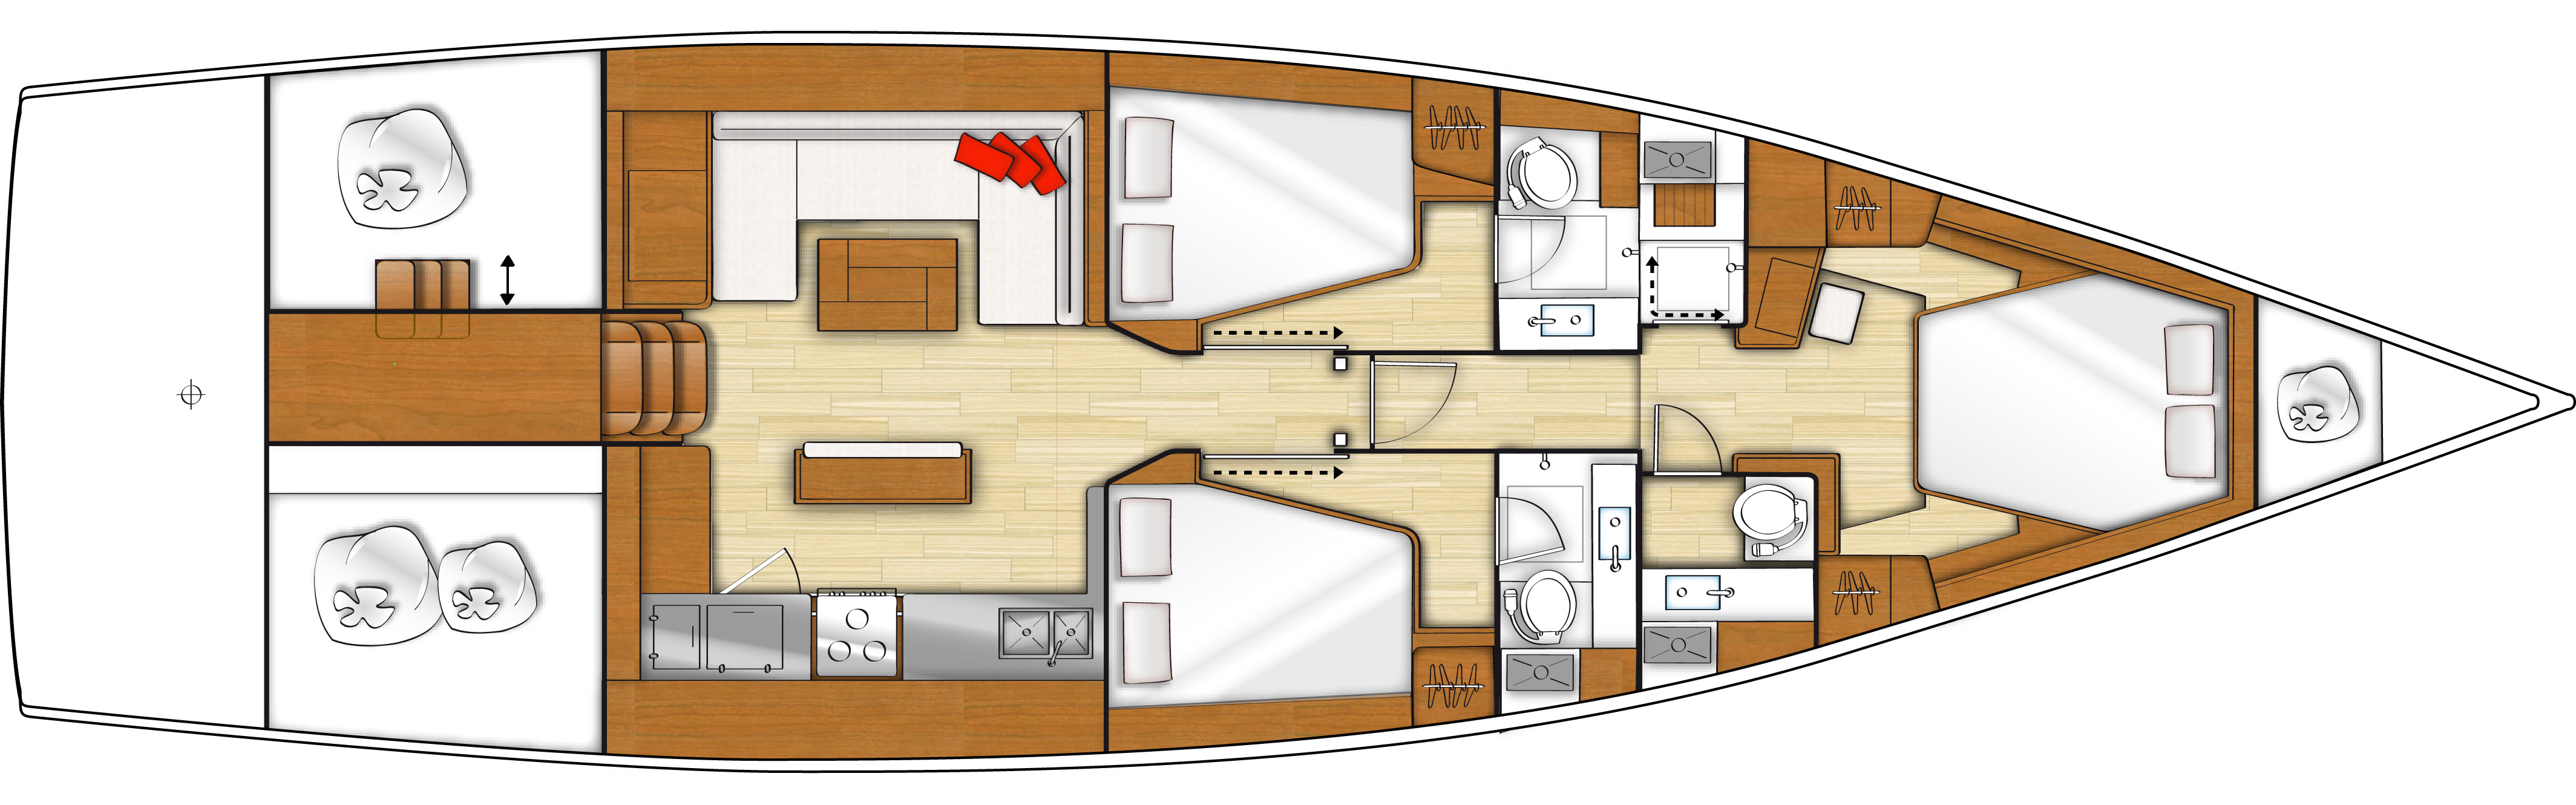 Beneteau Sense 55 Sailing Yacht for Sale - New Boat Dealer